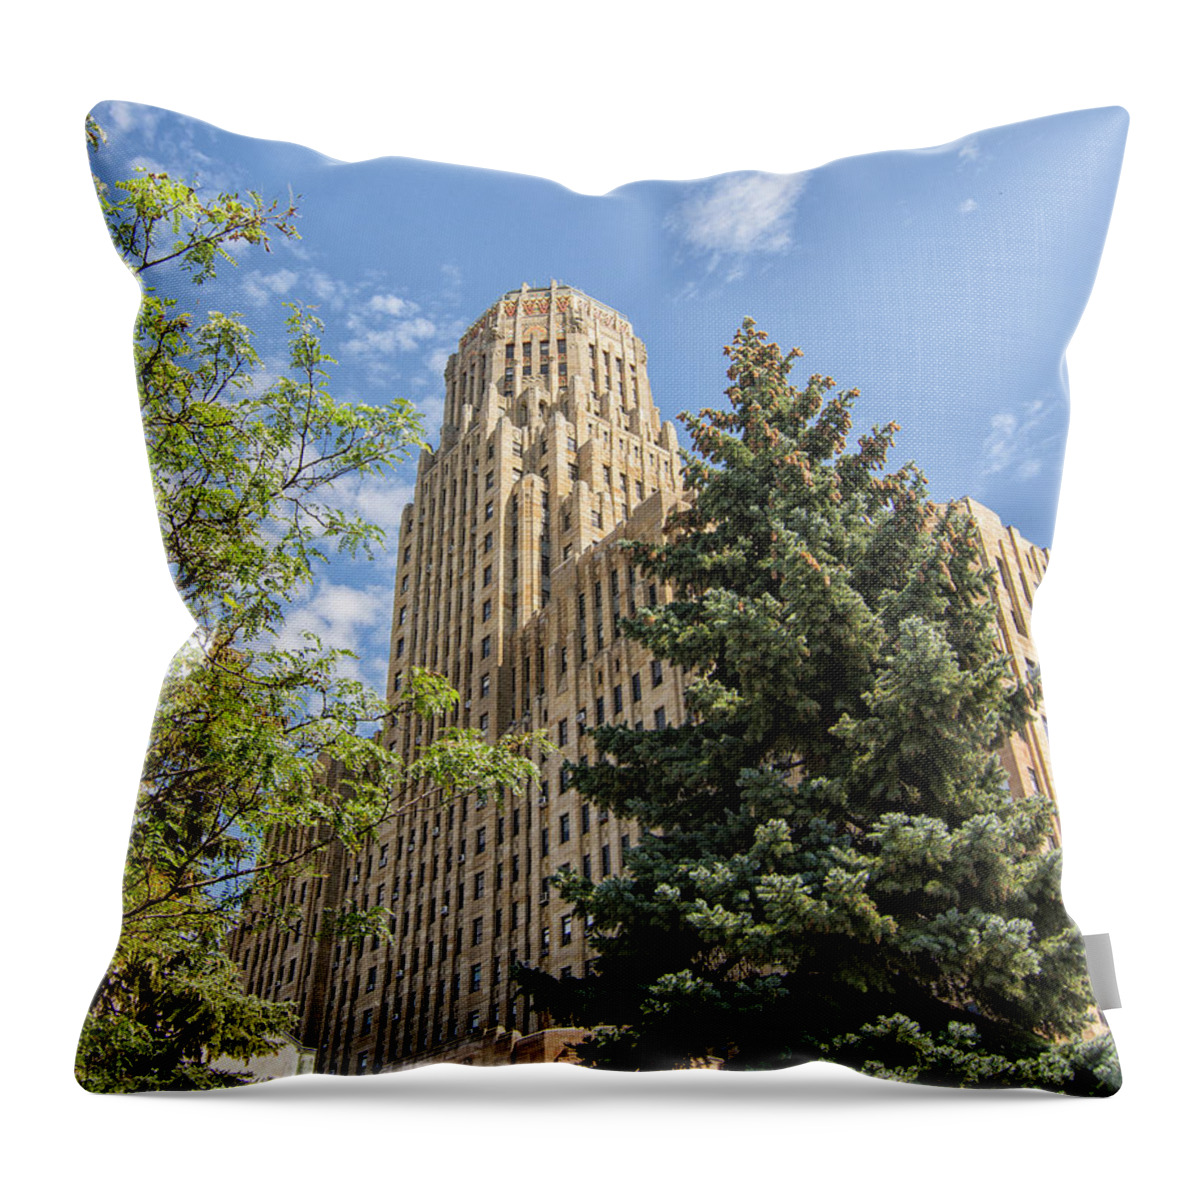 Buffalo Throw Pillow featuring the photograph Buffalo City Hall by Deborah Ritch